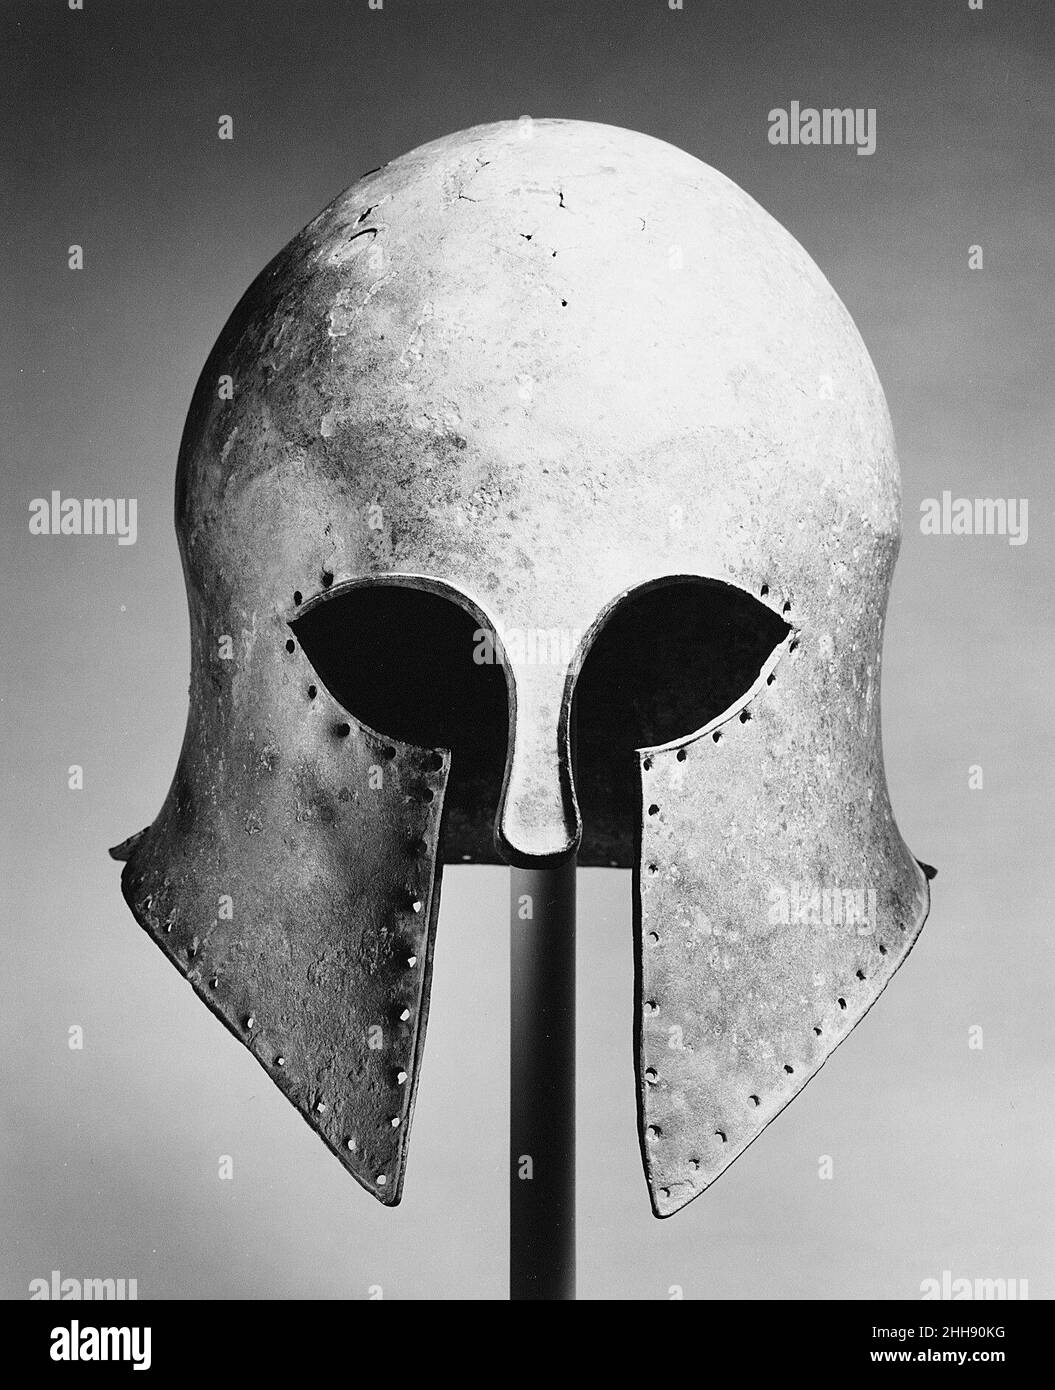 Bronzehelm des korinthischen Typs Ende des 6th. Jahrhunderts v. Chr. Griechisch der charakteristischste griechische Helm ist der des korinthischen Typs. Es zeichnet sich durch die Aussparungen für die Augen, das schmale Nasenstück und die kleine Öffnung für Lippen und Kinn aus. Die Löcher um die Kanten sind für die Befestigung einer Verkleidung. Es begann um 700 v. Chr. verwendet zu werden, und es gibt bedeutende Beweise, um seinen Ursprung in Korinth zu belegen. Diese Art von Helm entwickelte sich in Form und wurde mit großer Kunst ausgeführt.. Bronzehelm vom korinthischen Typ. Griechisch. Spätes 6th Jahrhundert B.C.. Bronze. Archaisch. Bronzen Stockfoto